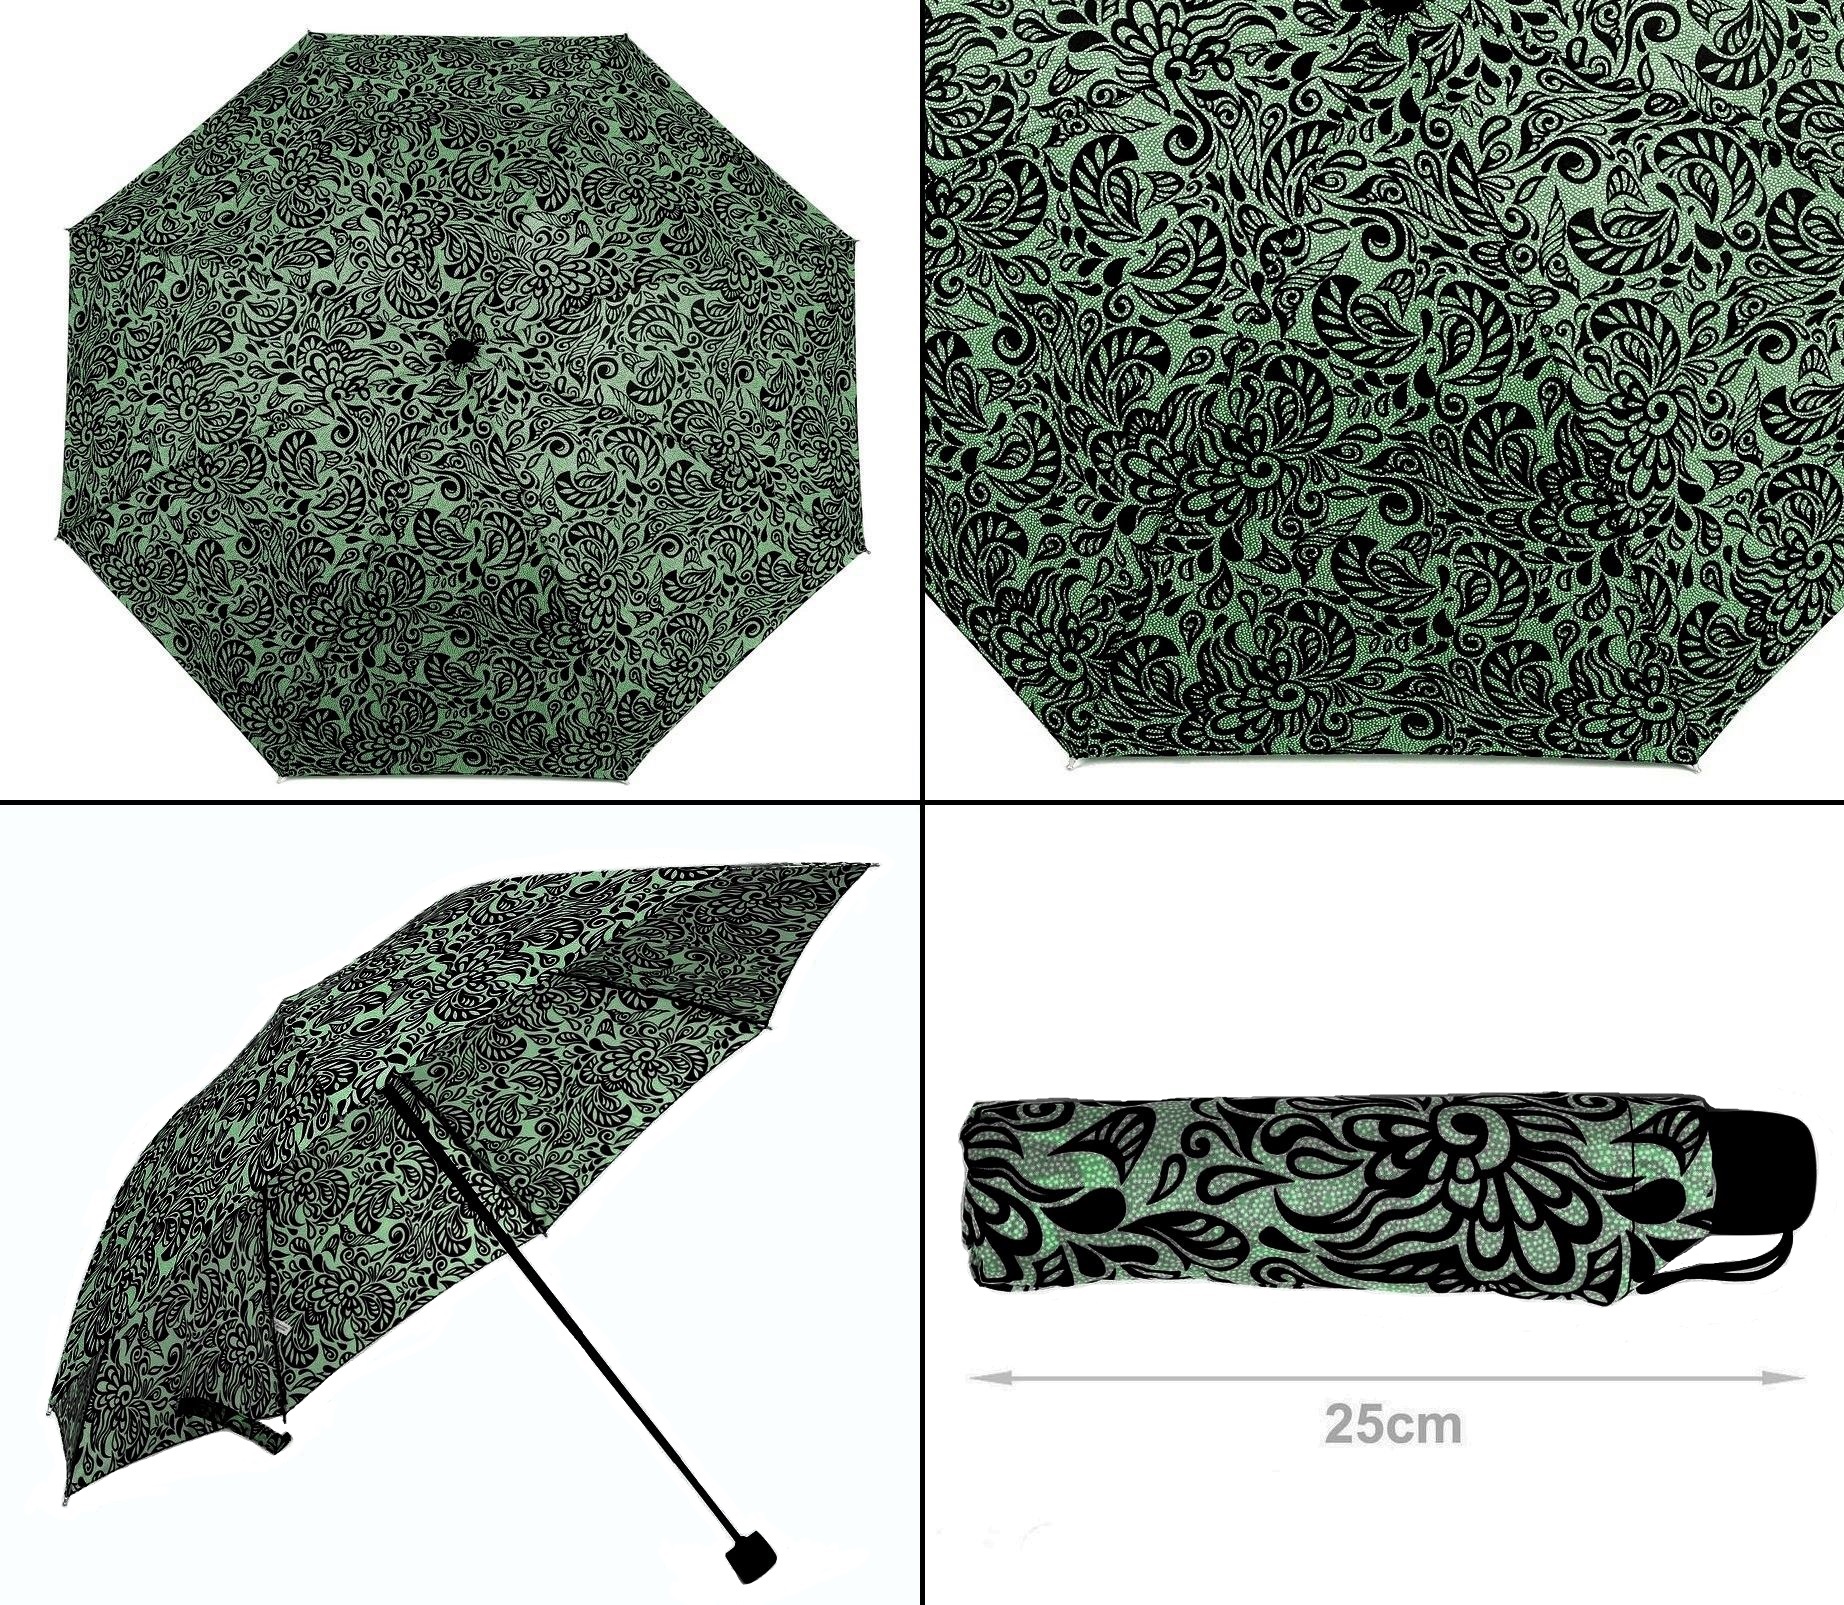 Gotický deštník skládací s ornamenty zelený